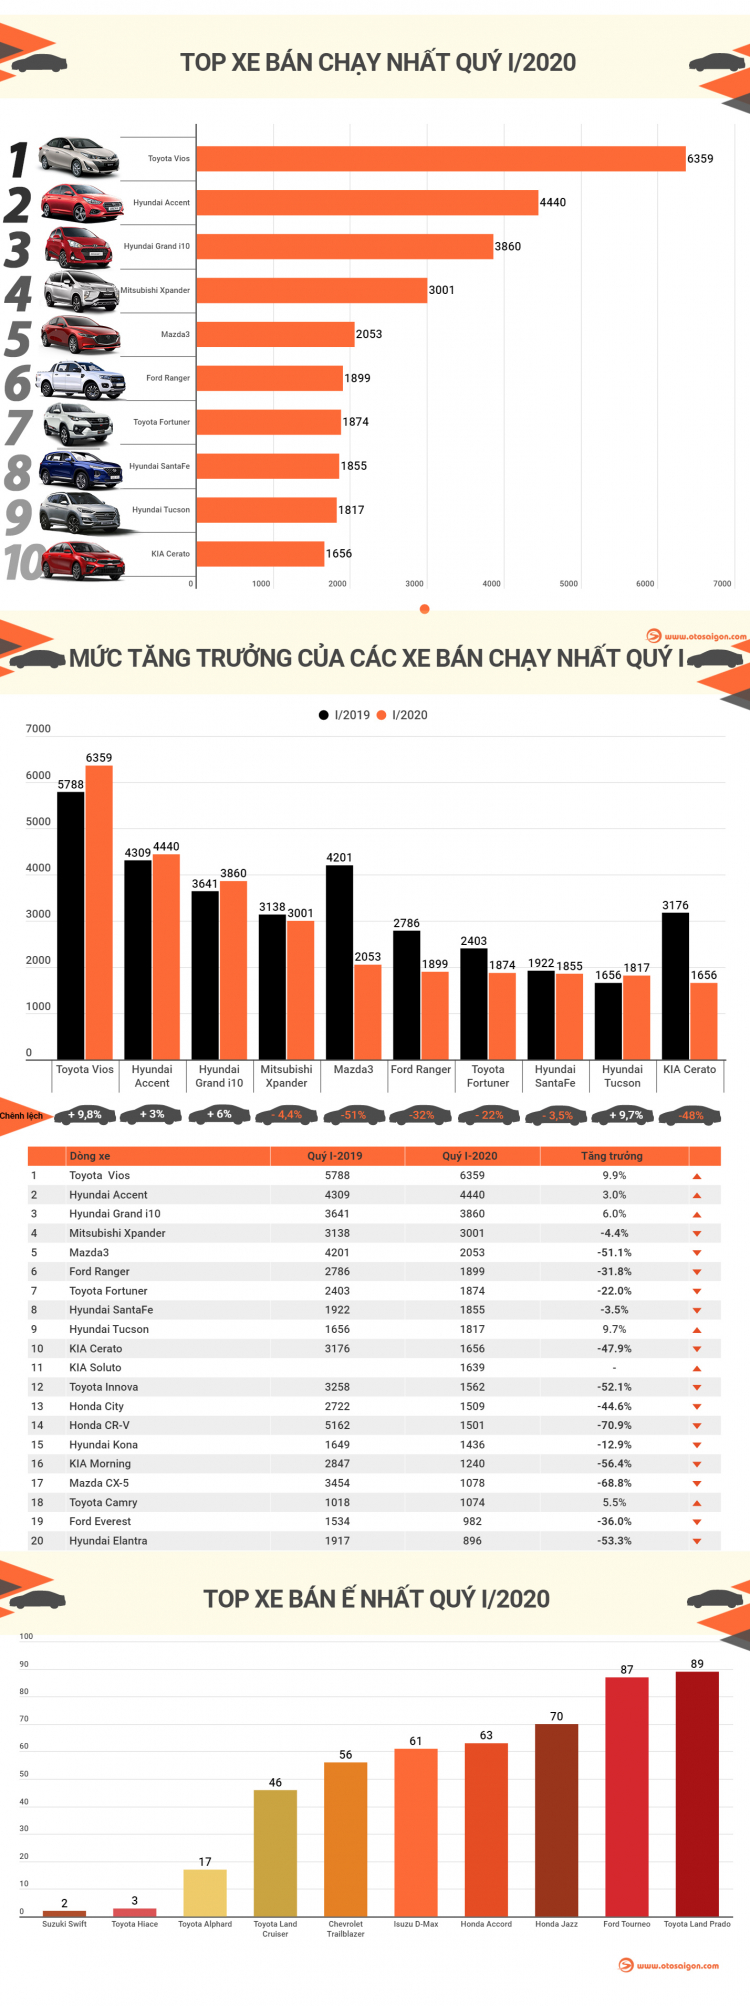 [Infographic] Top 10 xe bán chạy tại Việt Nam quý I/2020: Vios vững ngôi đầu